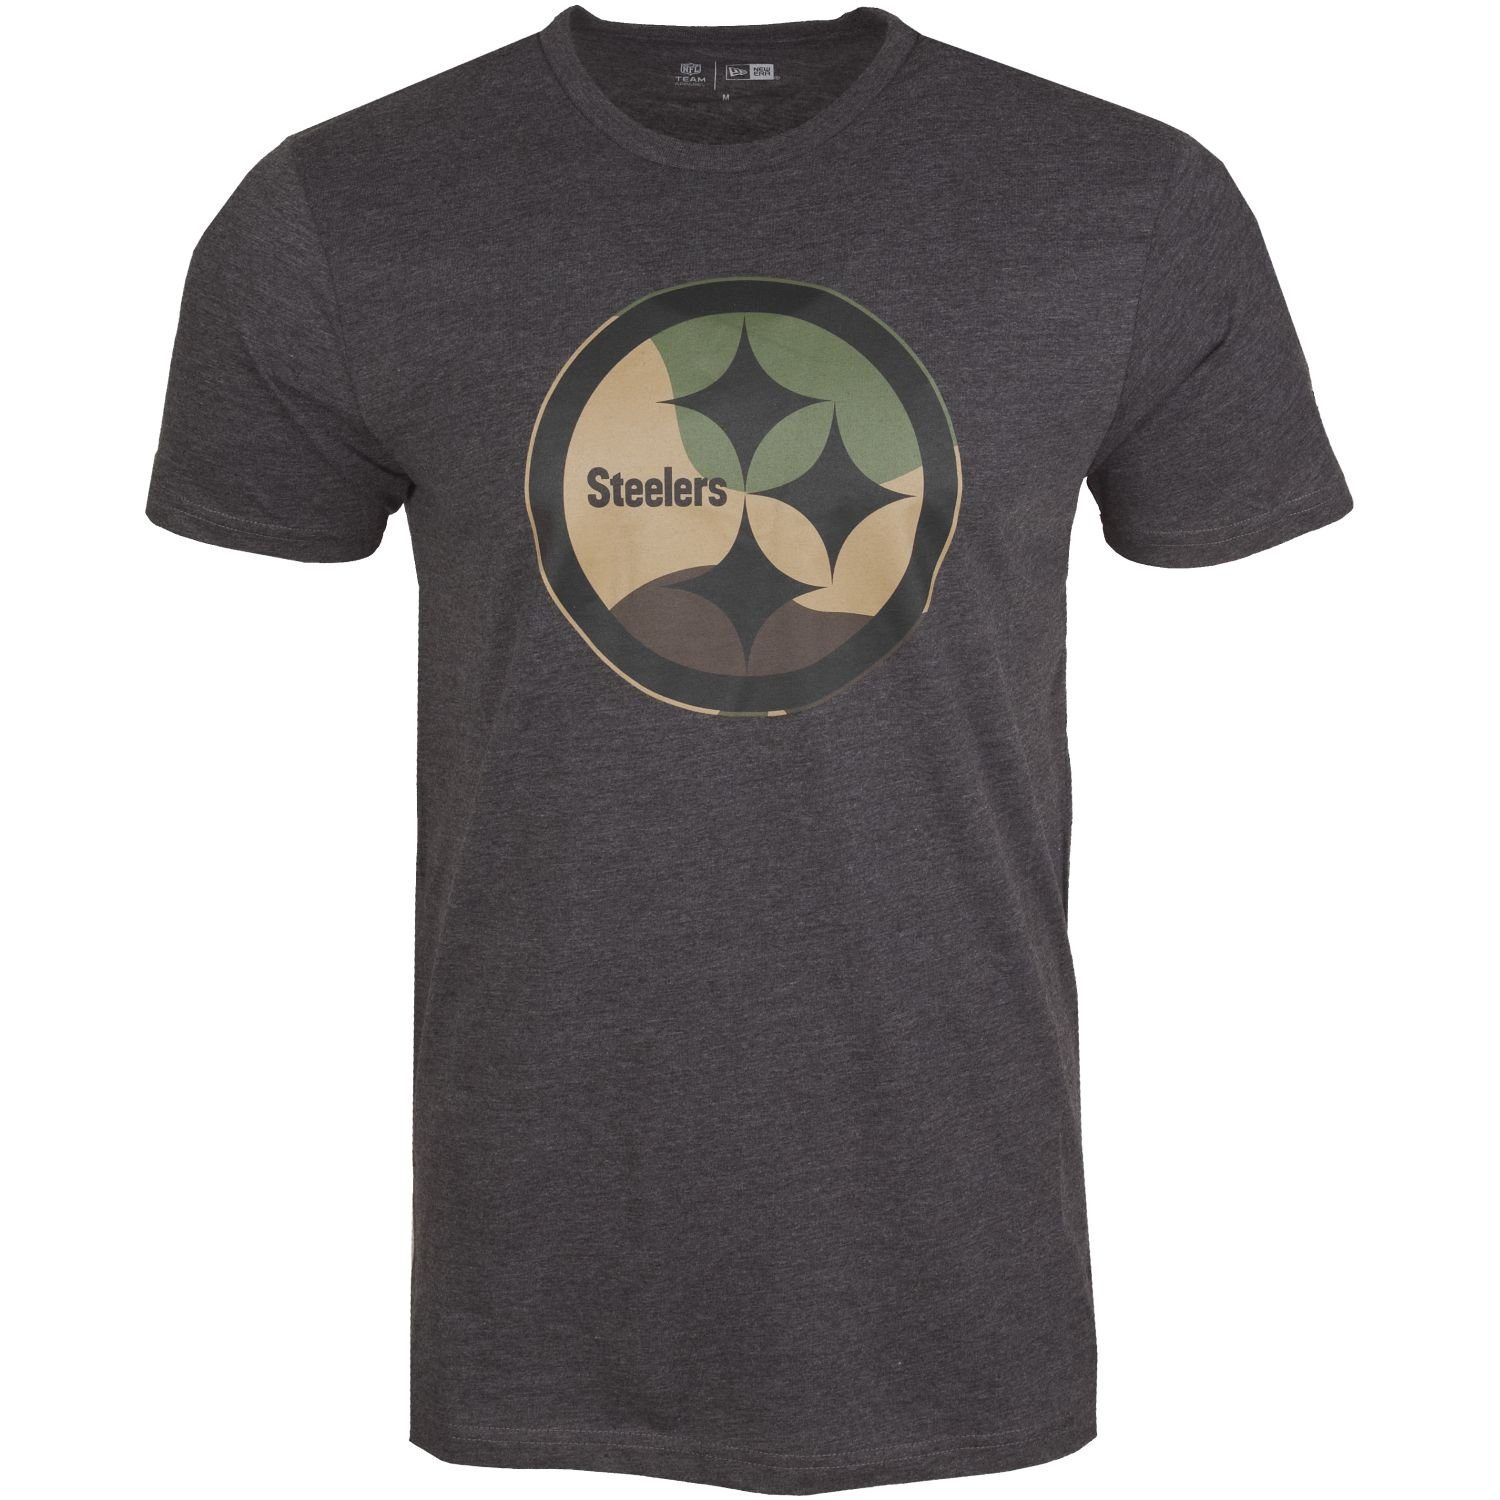 Print-Shirt New Steelers NFL Pittsburgh Era Team charcoal Logo